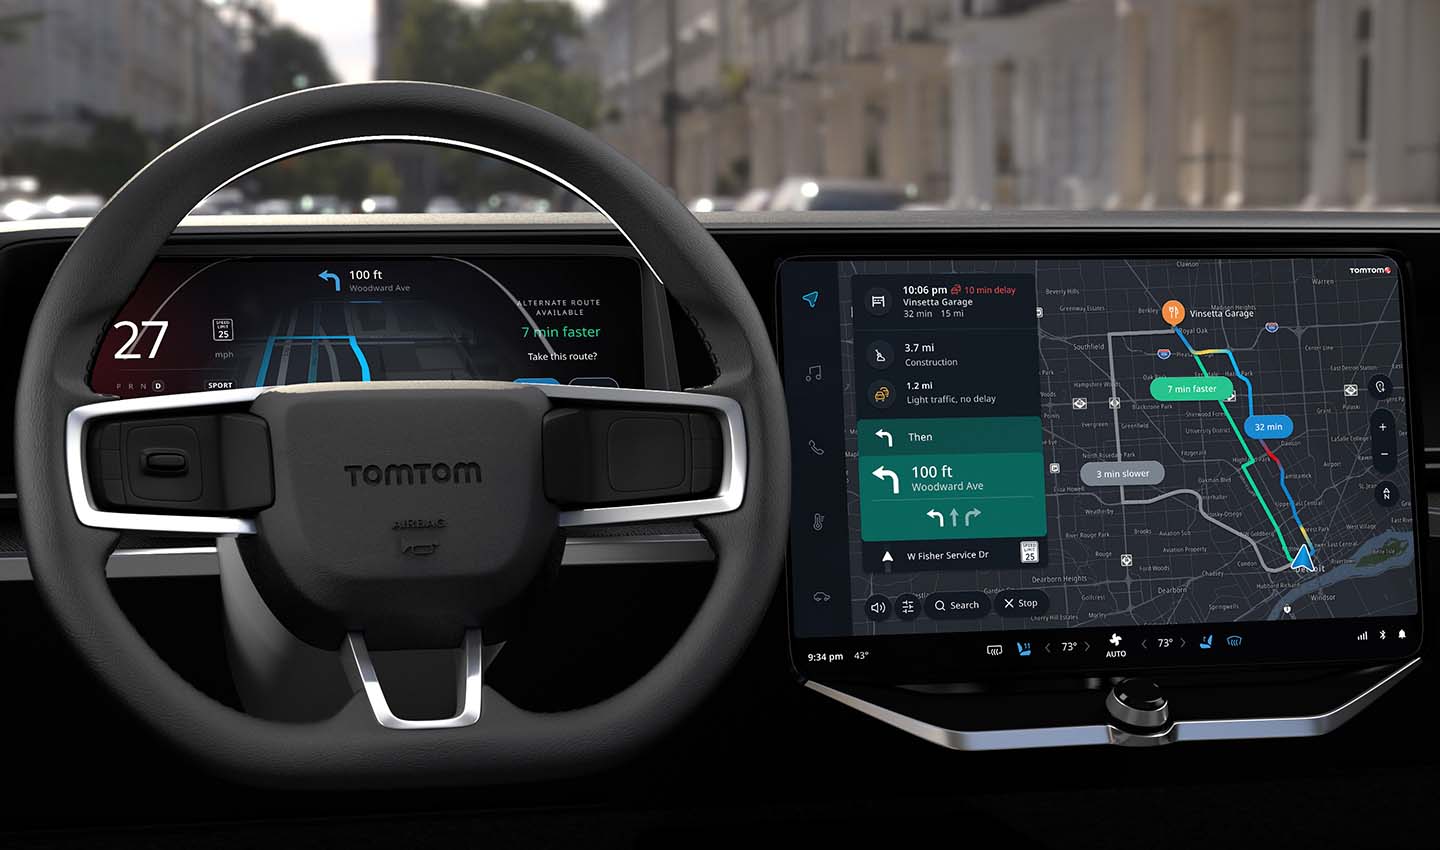 TomTom - Navigation for Automotive